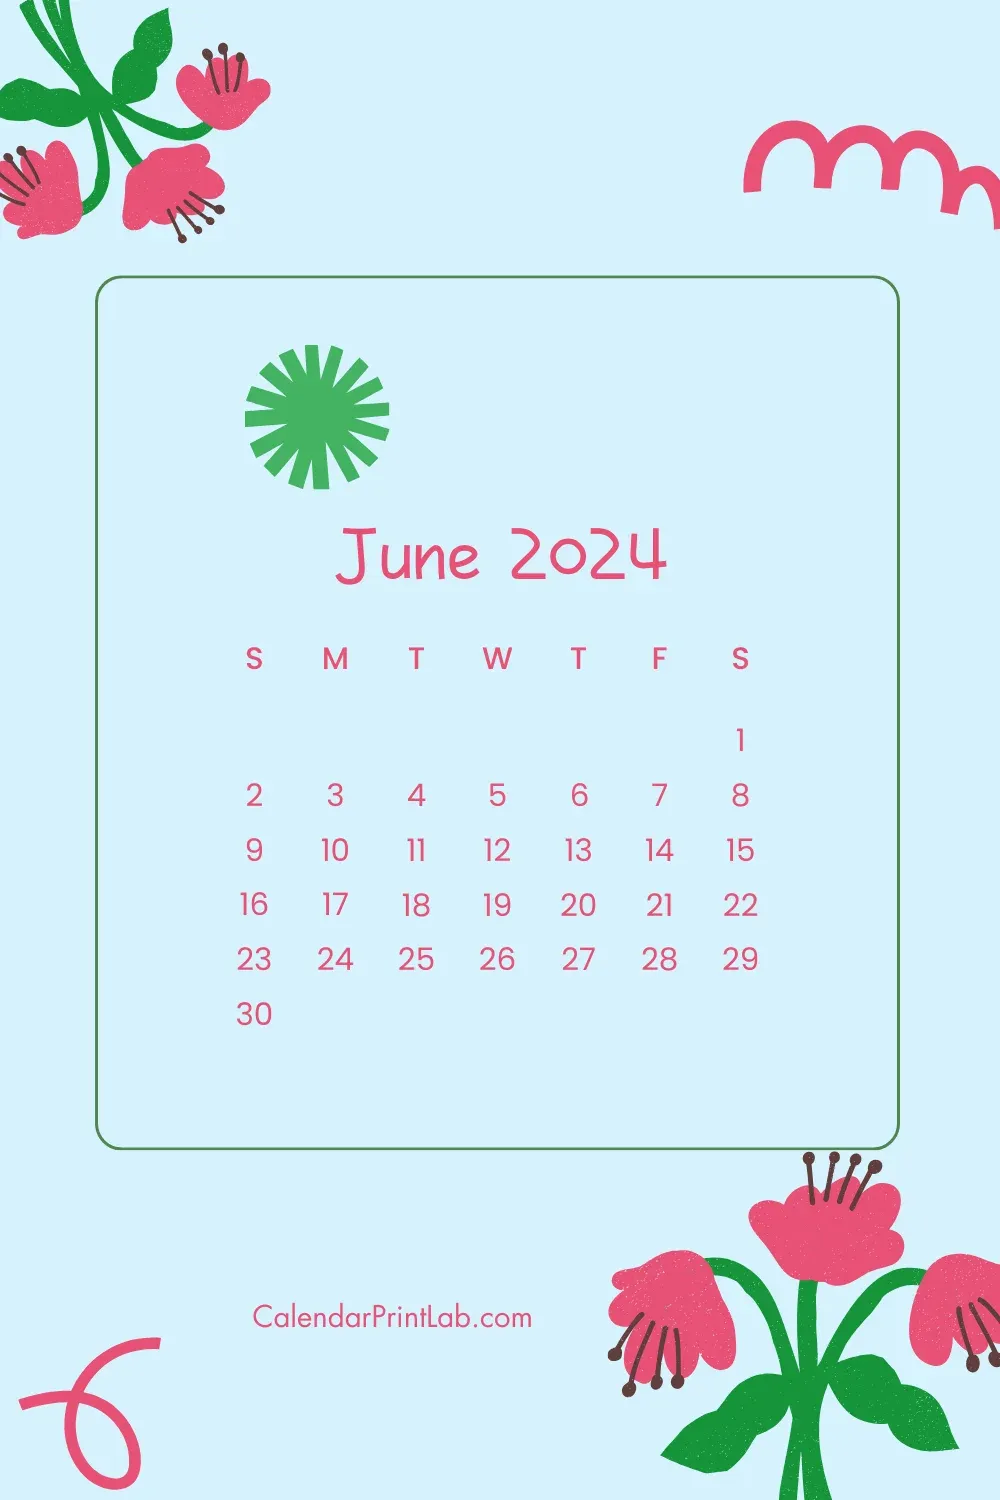 June 2024 Mobile Calendar Wallpaper